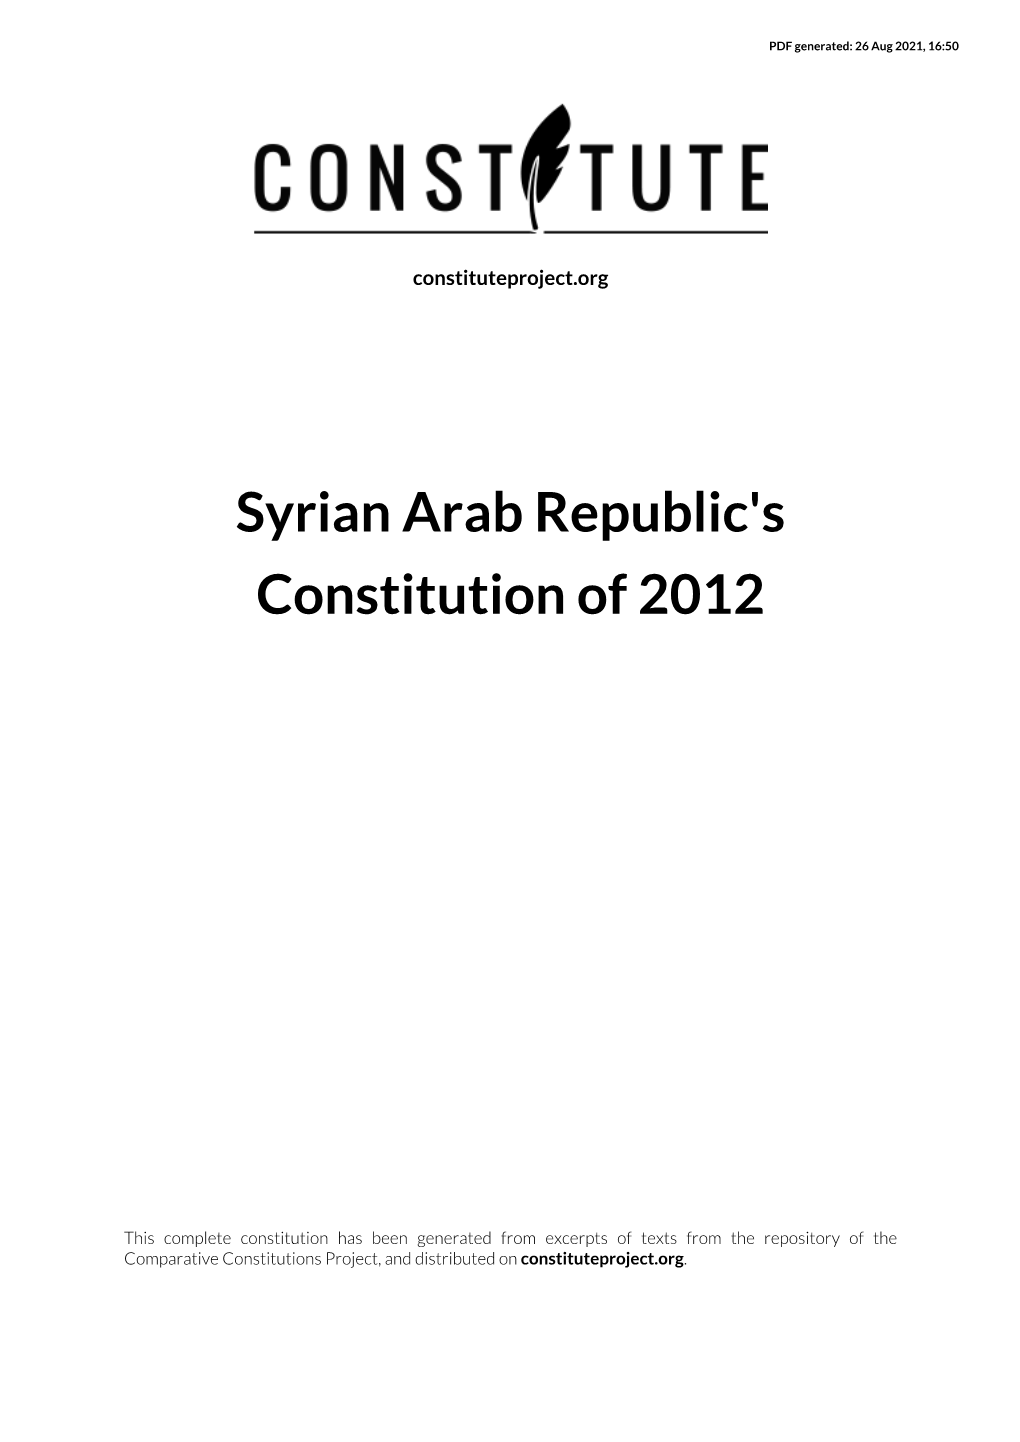 Syrian Arab Republic's Constitution of 2012